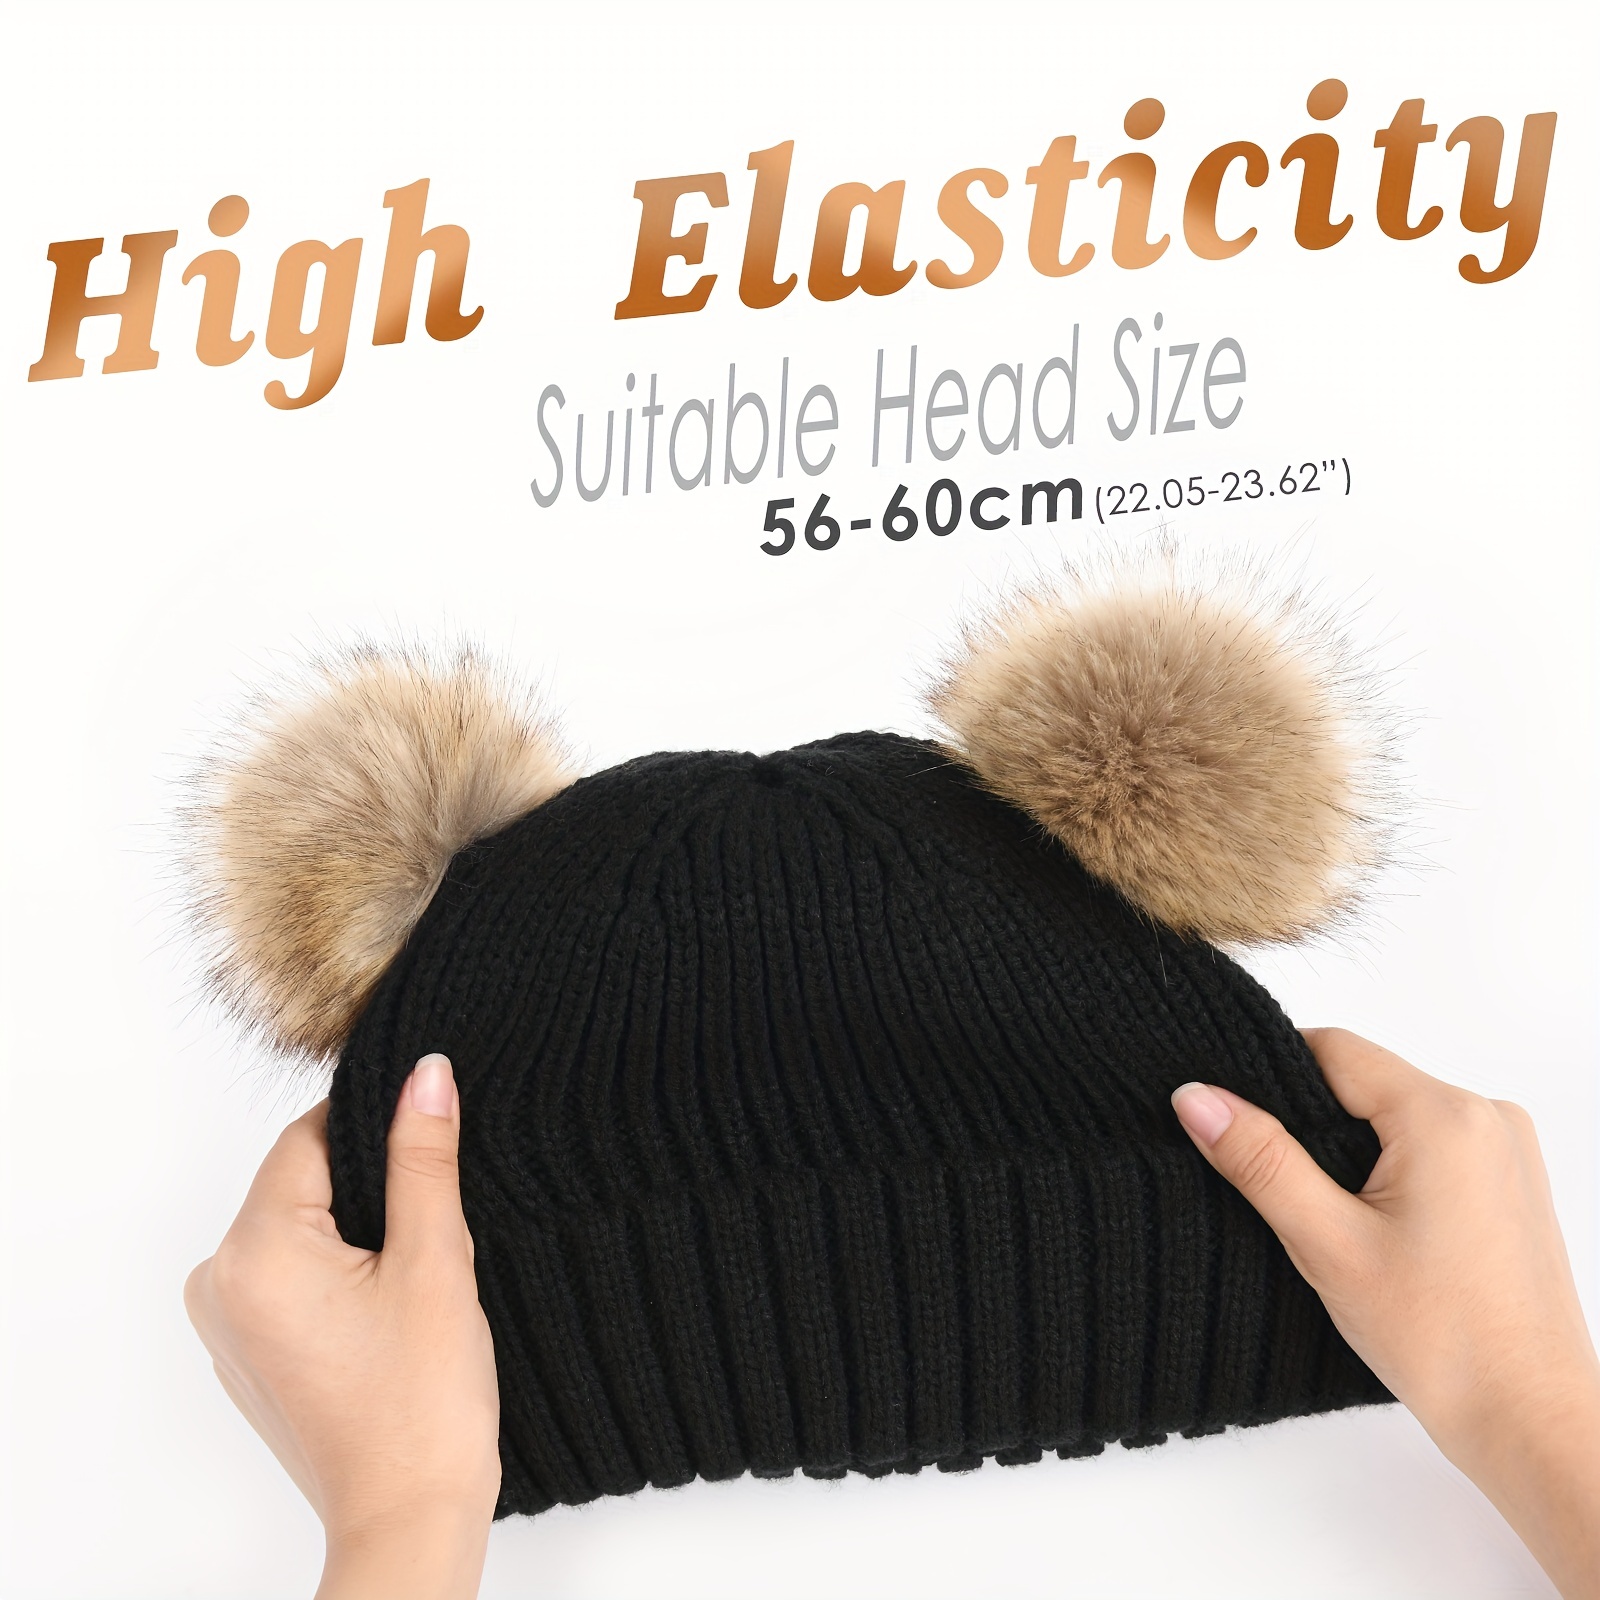 Beanie Hat with Faux Fur Pom-Pom Black / One Size